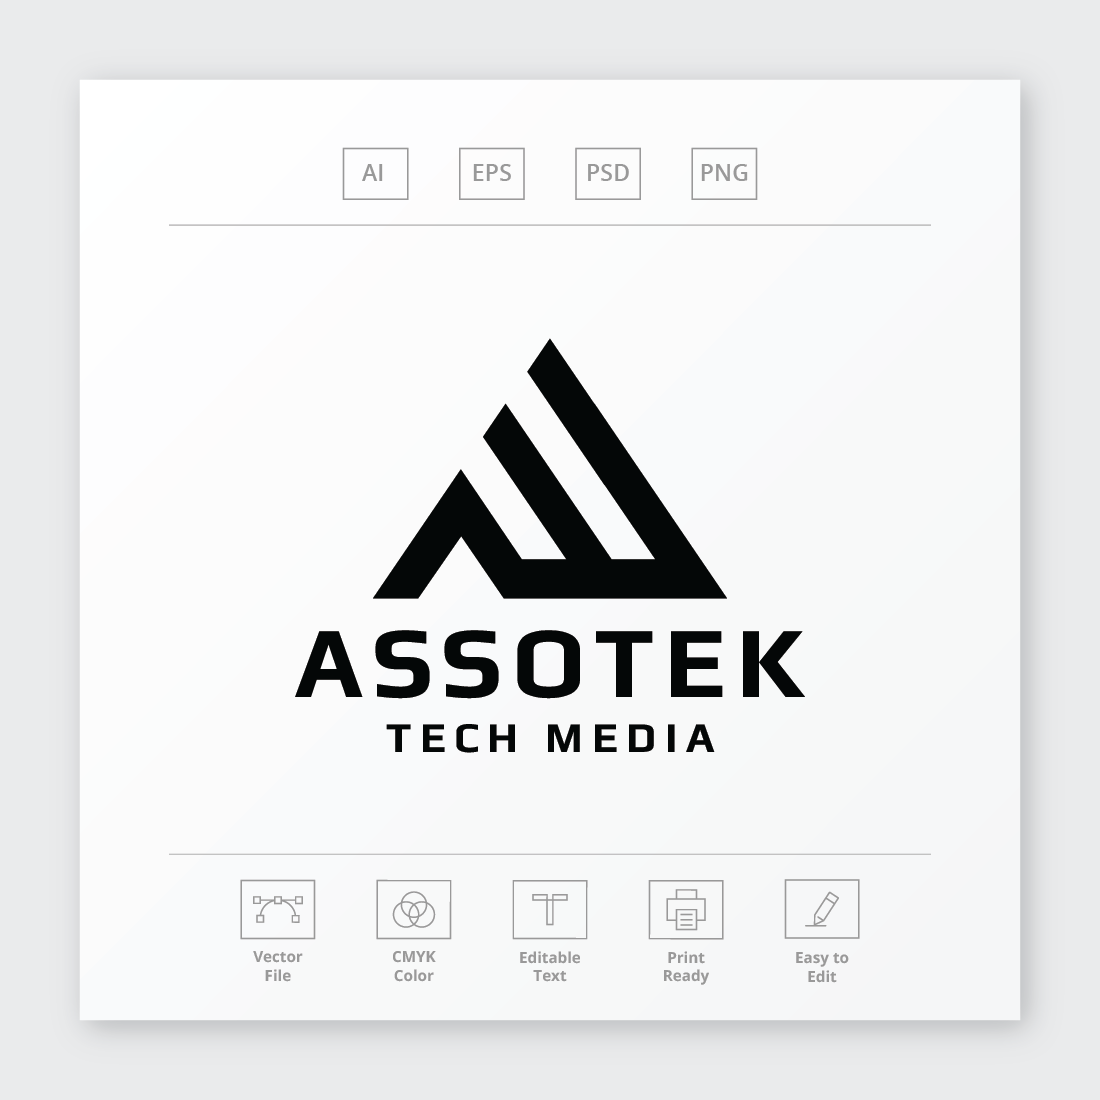 Assotek Letter A Logo preview image.